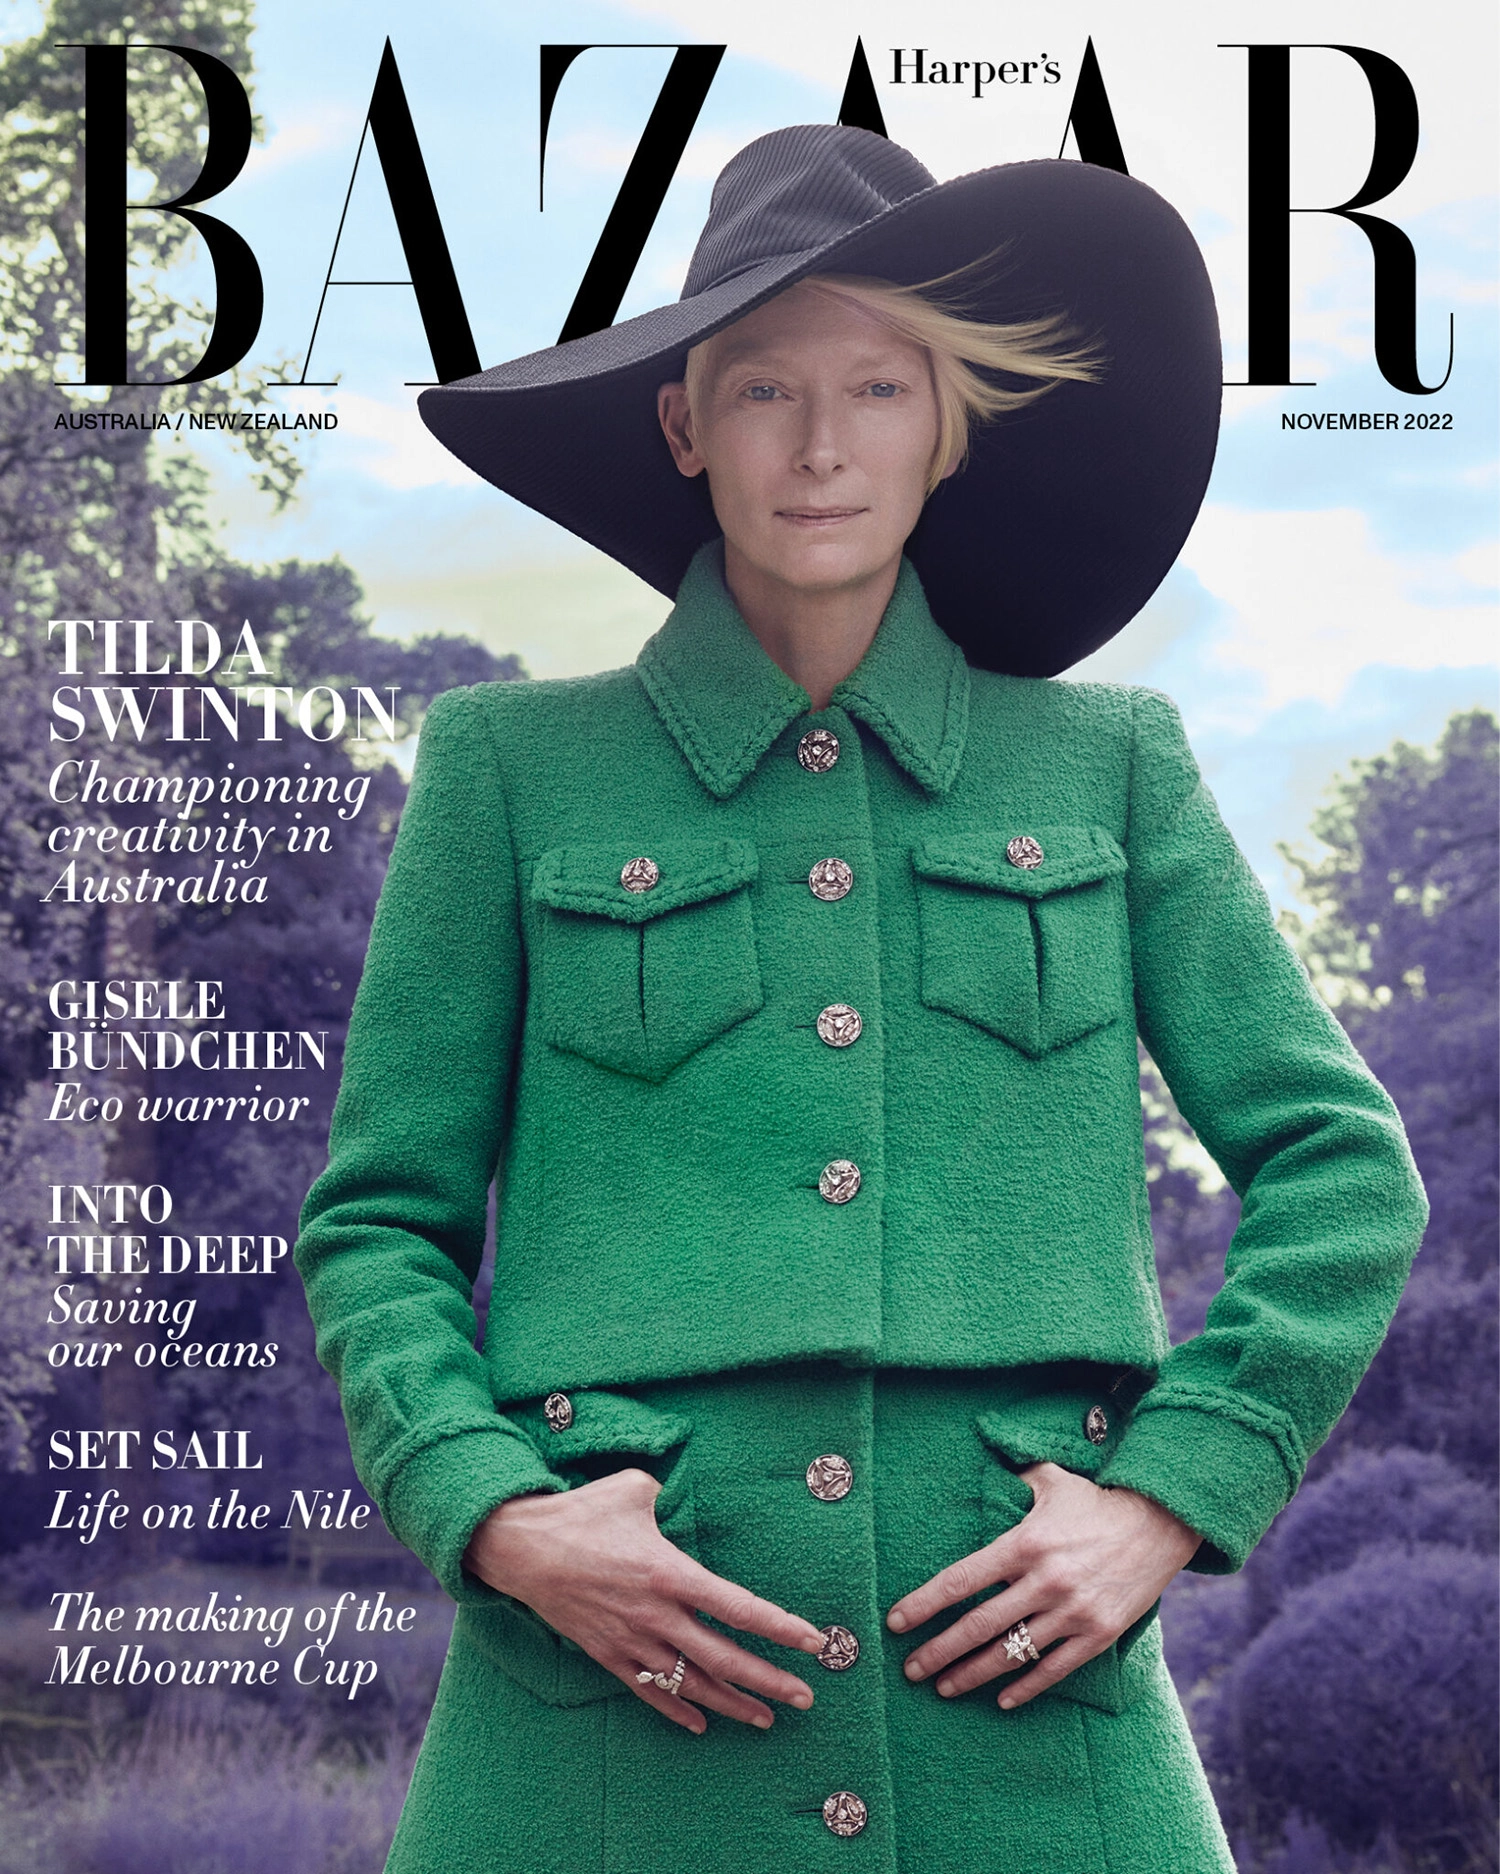 Tilda Swinton covers Harper’s Bazaar Australia & New Zealand November 2022 by Sølve Sundsbø